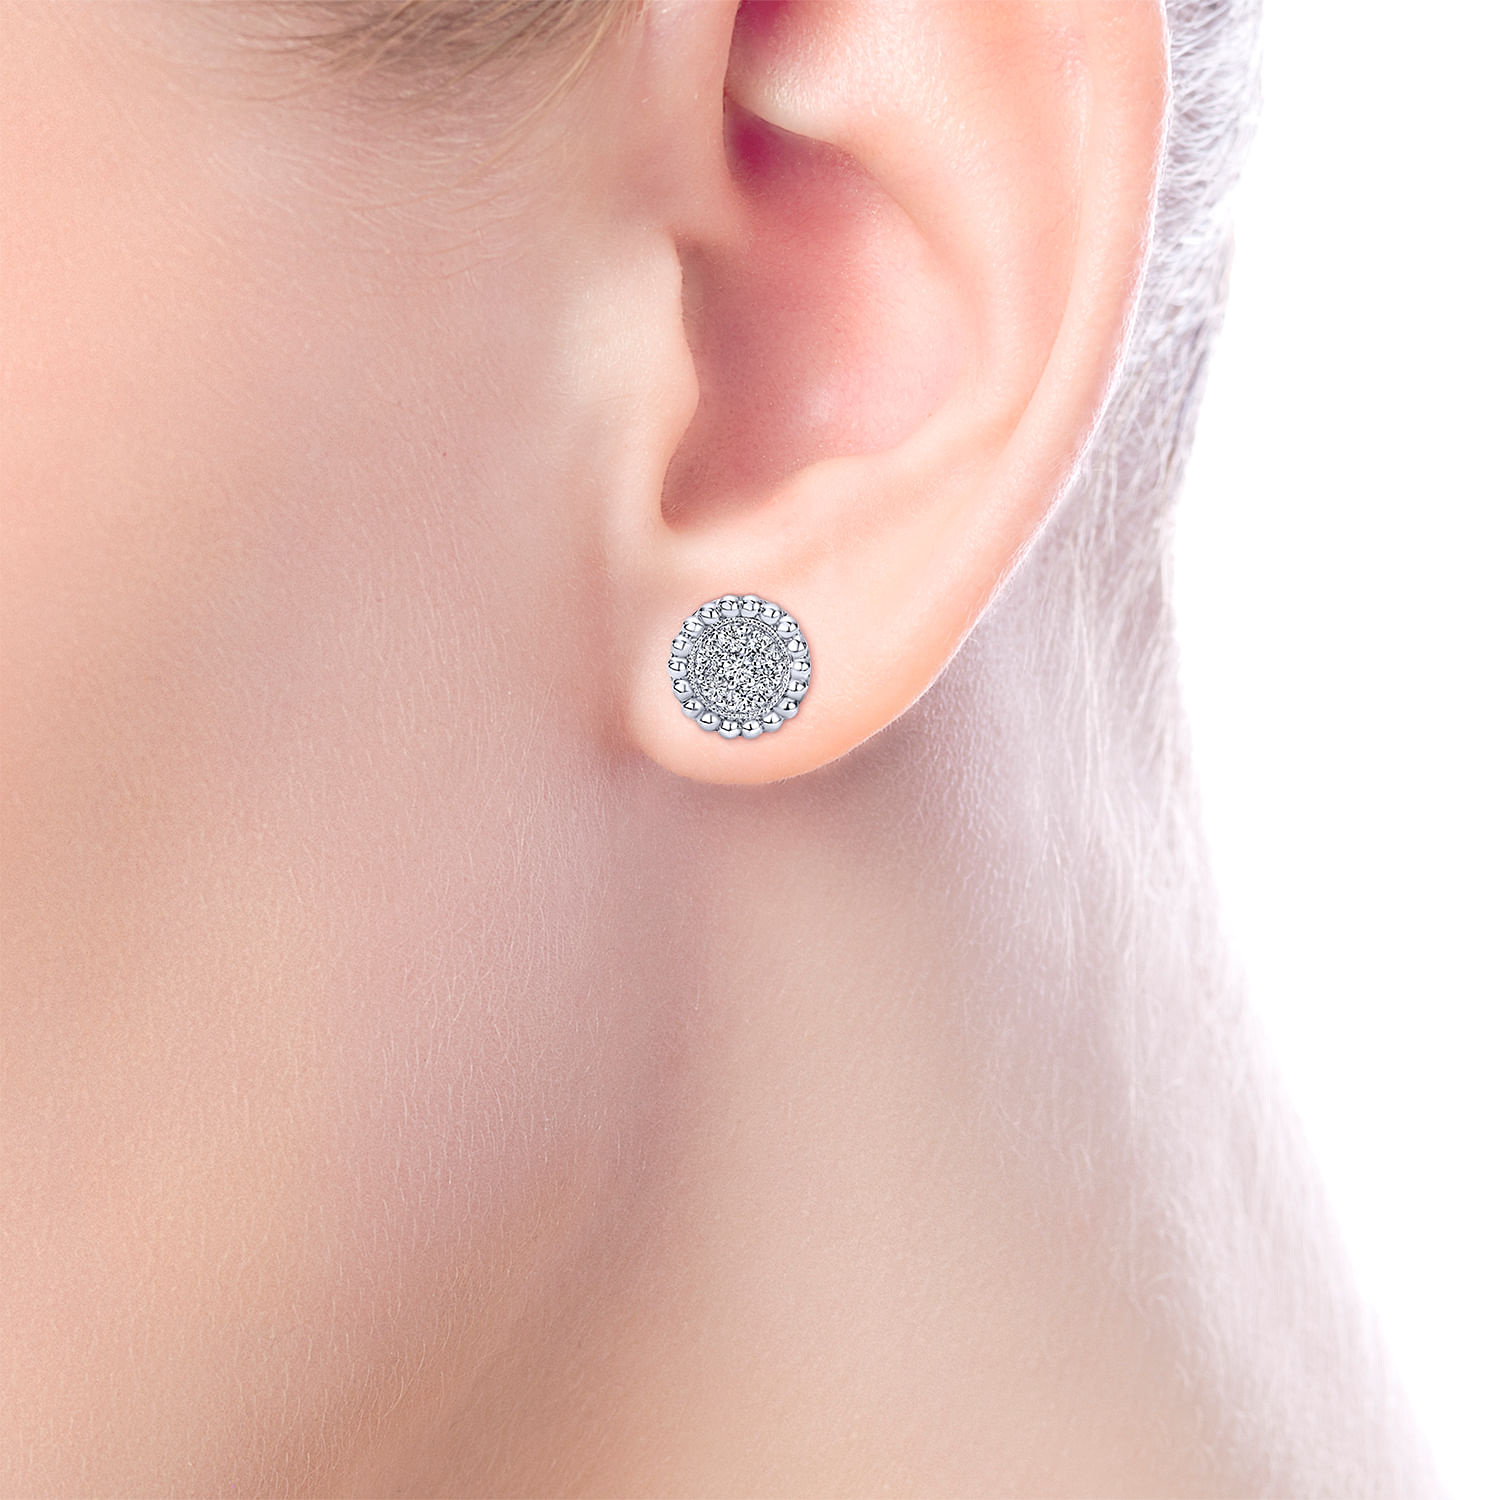 14K White Gold Beaded Round Diamond Cluster Stud Earrings